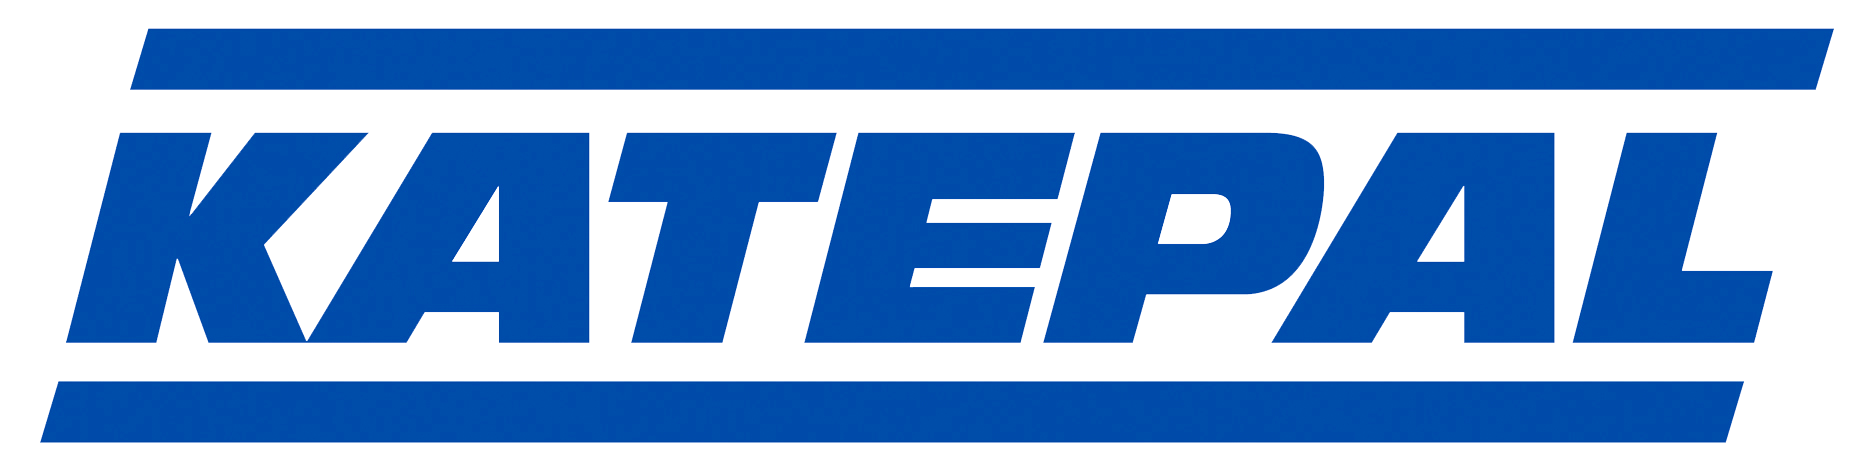 katepal-logo-1